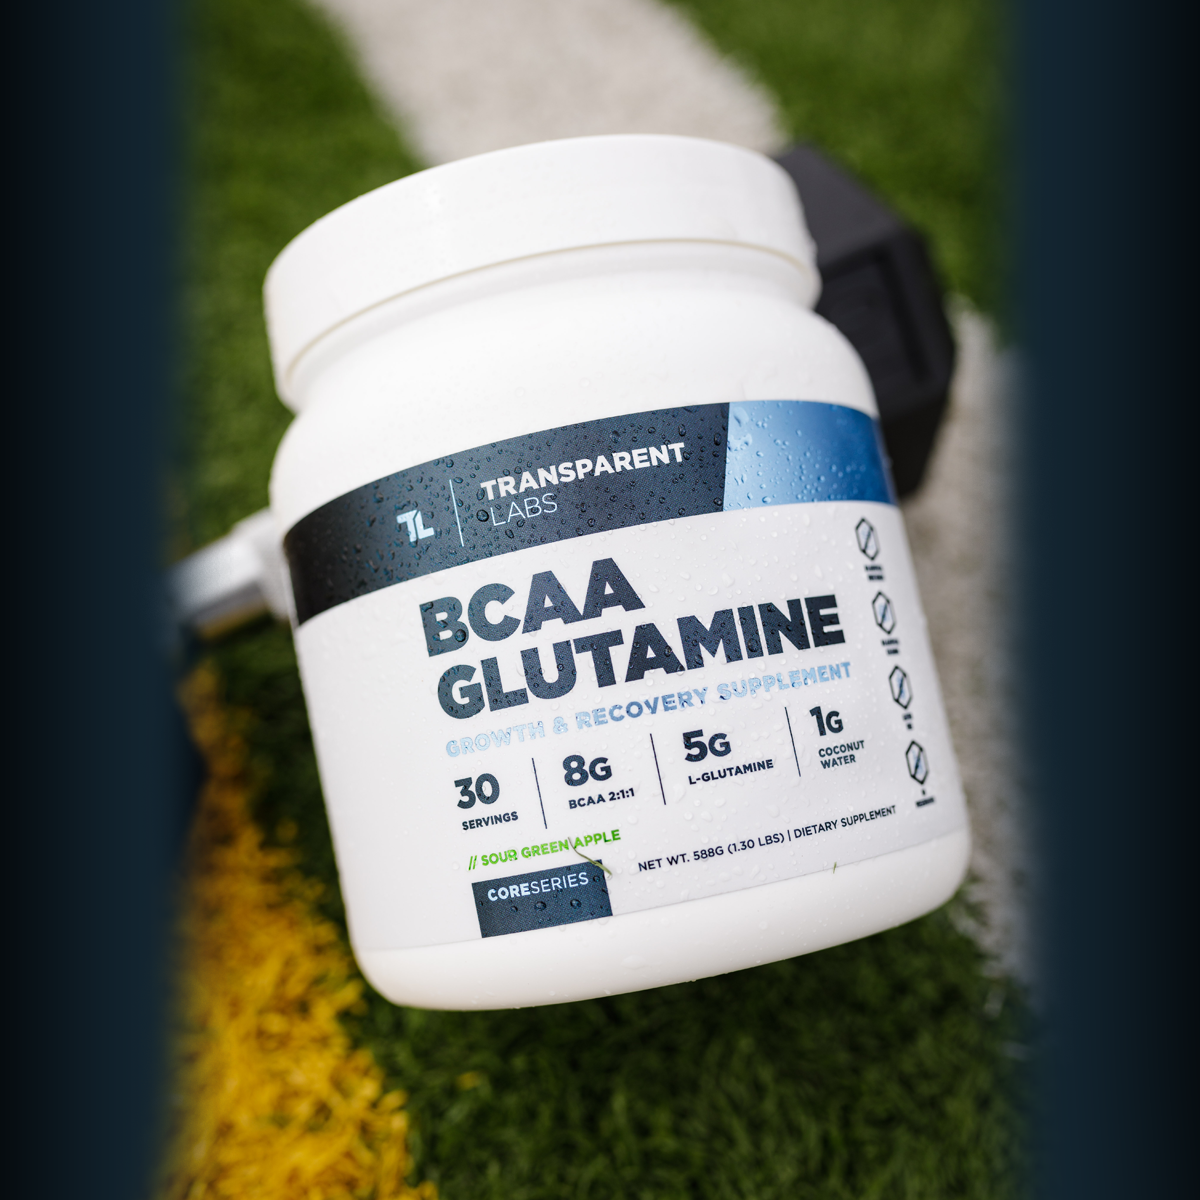 One Sol BCAA Hydration Formula - EveryBody Nutrition